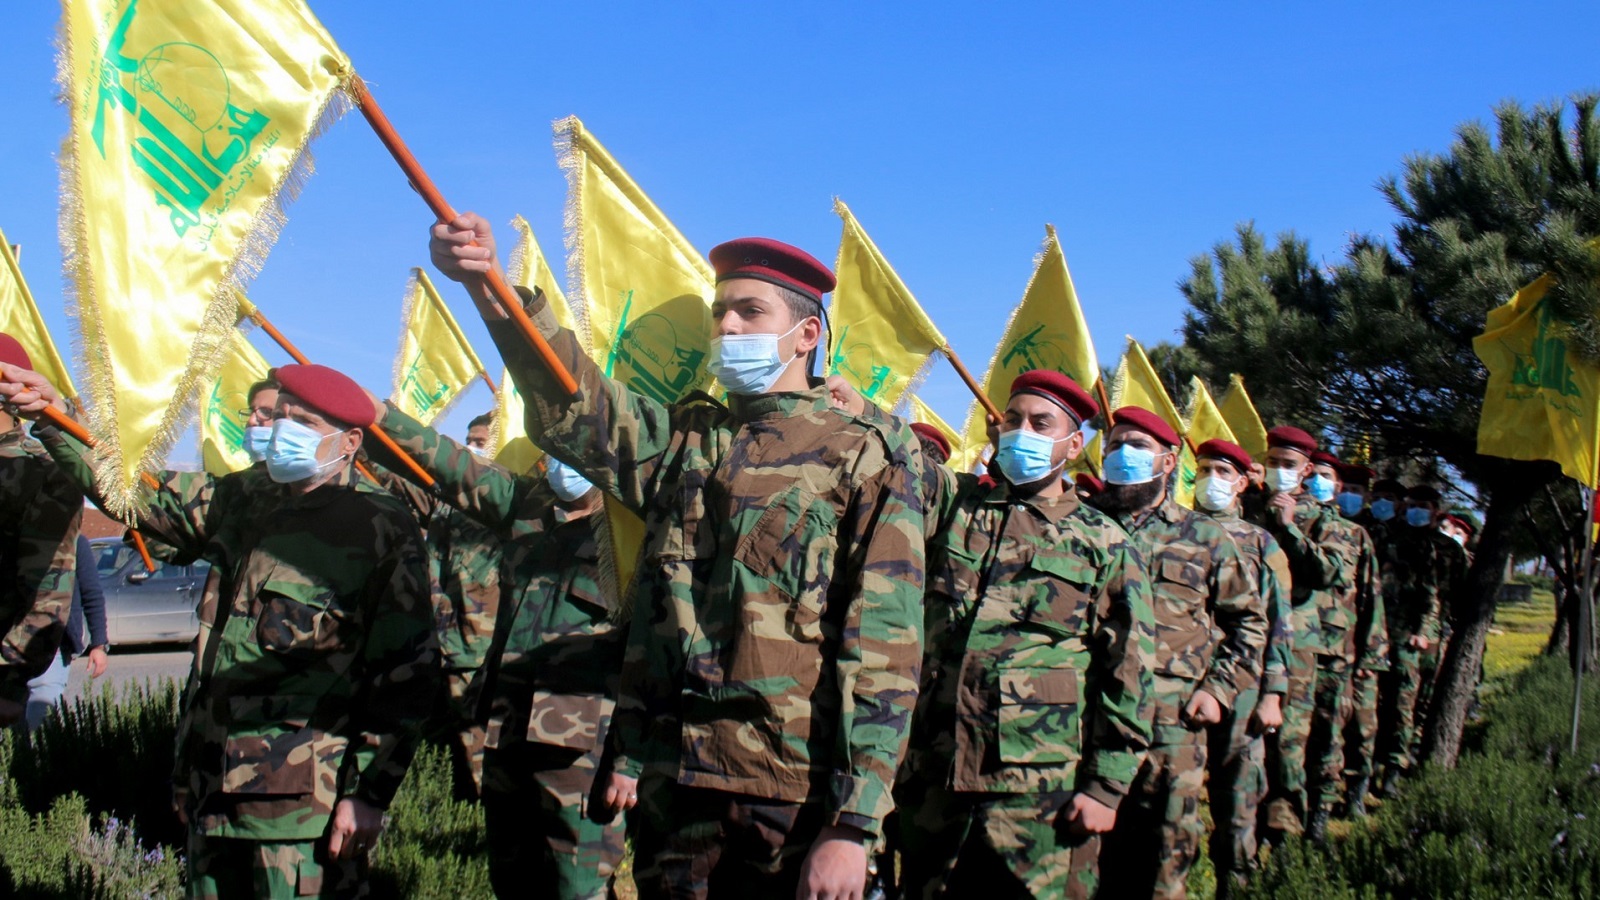 سياسي أوروبي يؤيد خطوة "حزب الله"..ويشعل الجدل